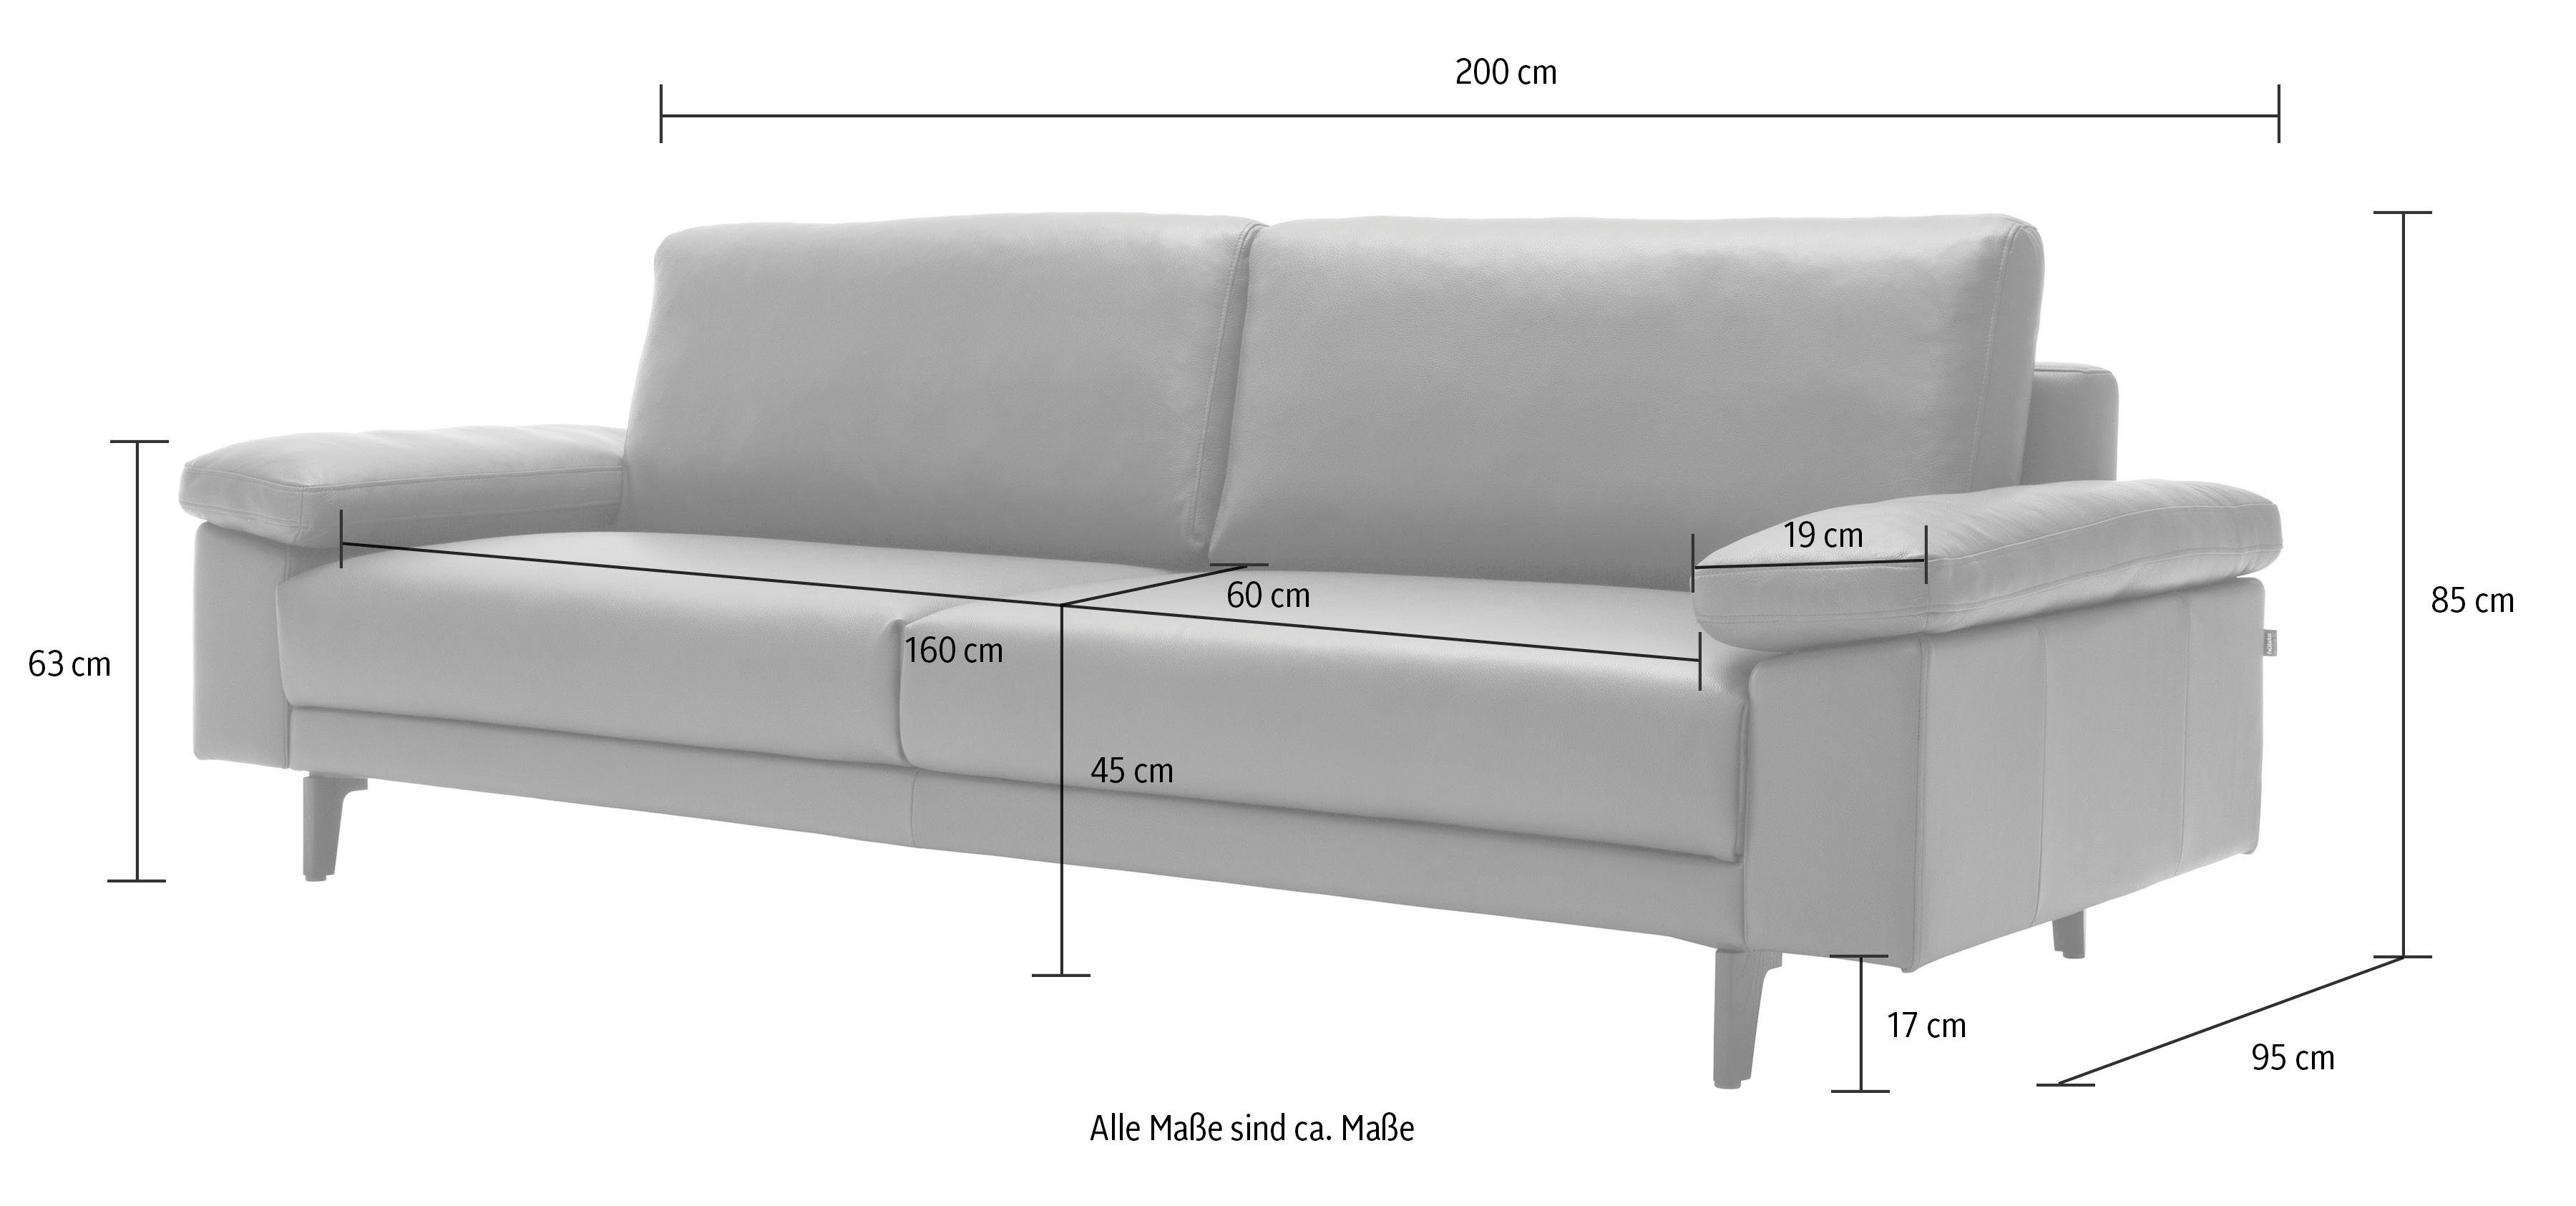 2-Sitzer hs.450 hülsta sofa